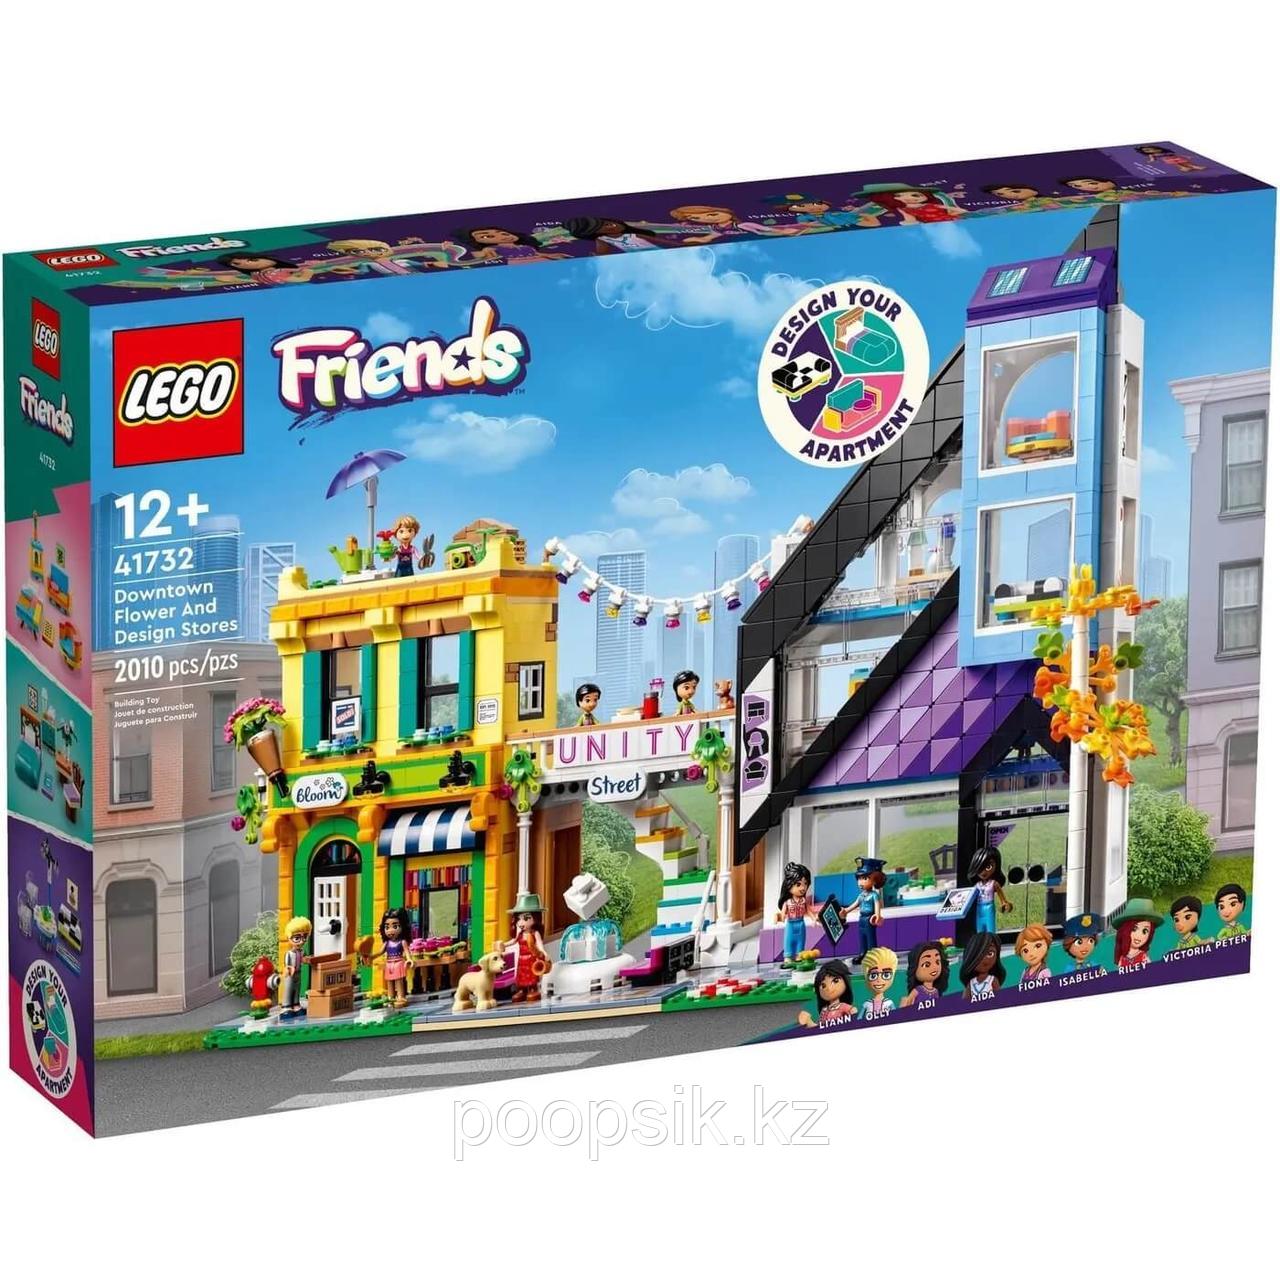 LEGO Friends Цветочный магазин и Ателье в центре города 41732